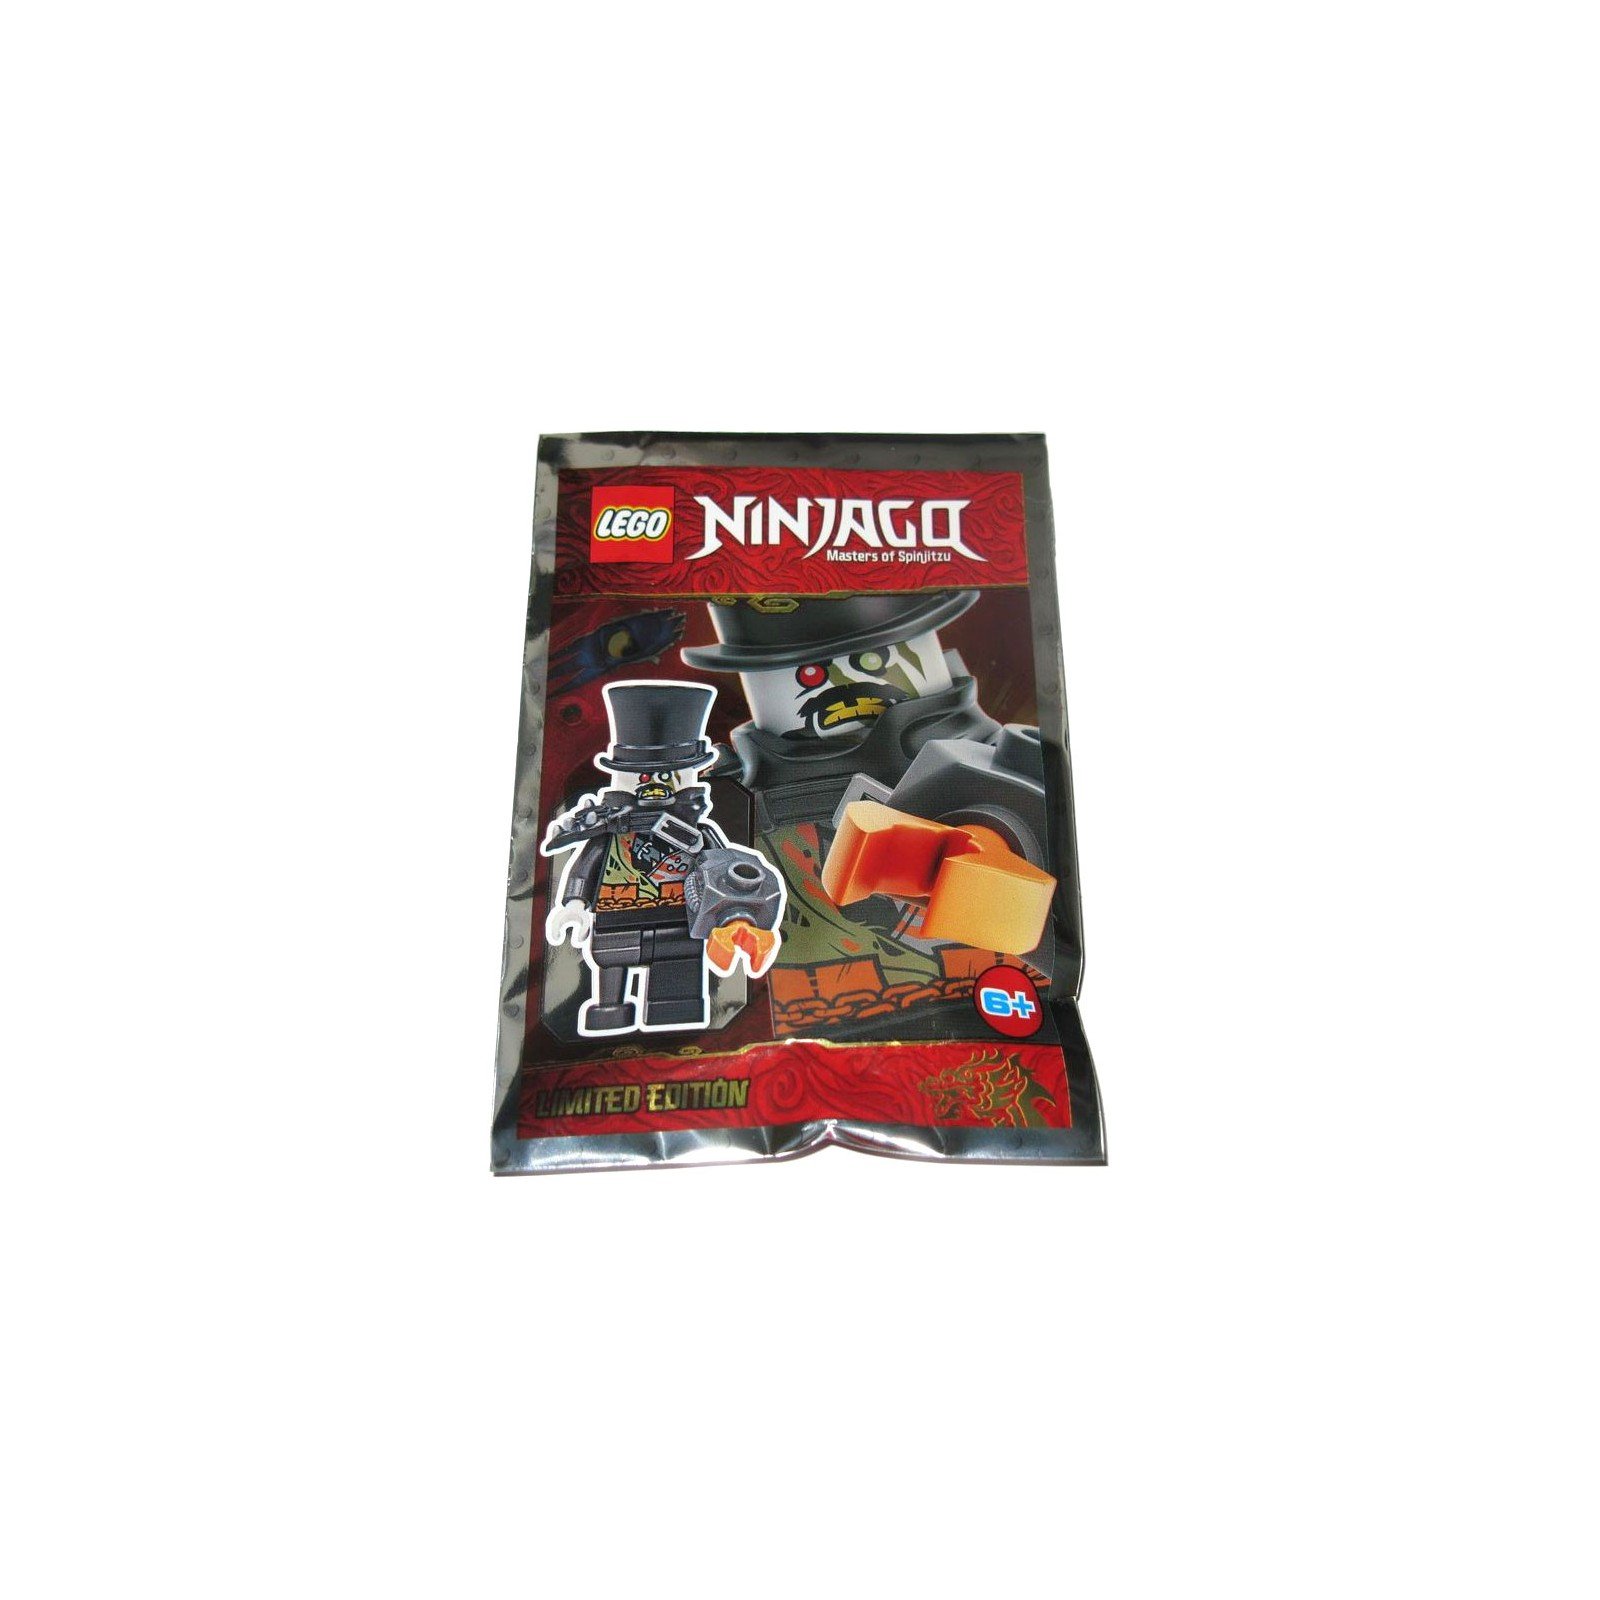 Iron Baron (Edition Limitée) - Polybag LEGO® Ninjago 891948